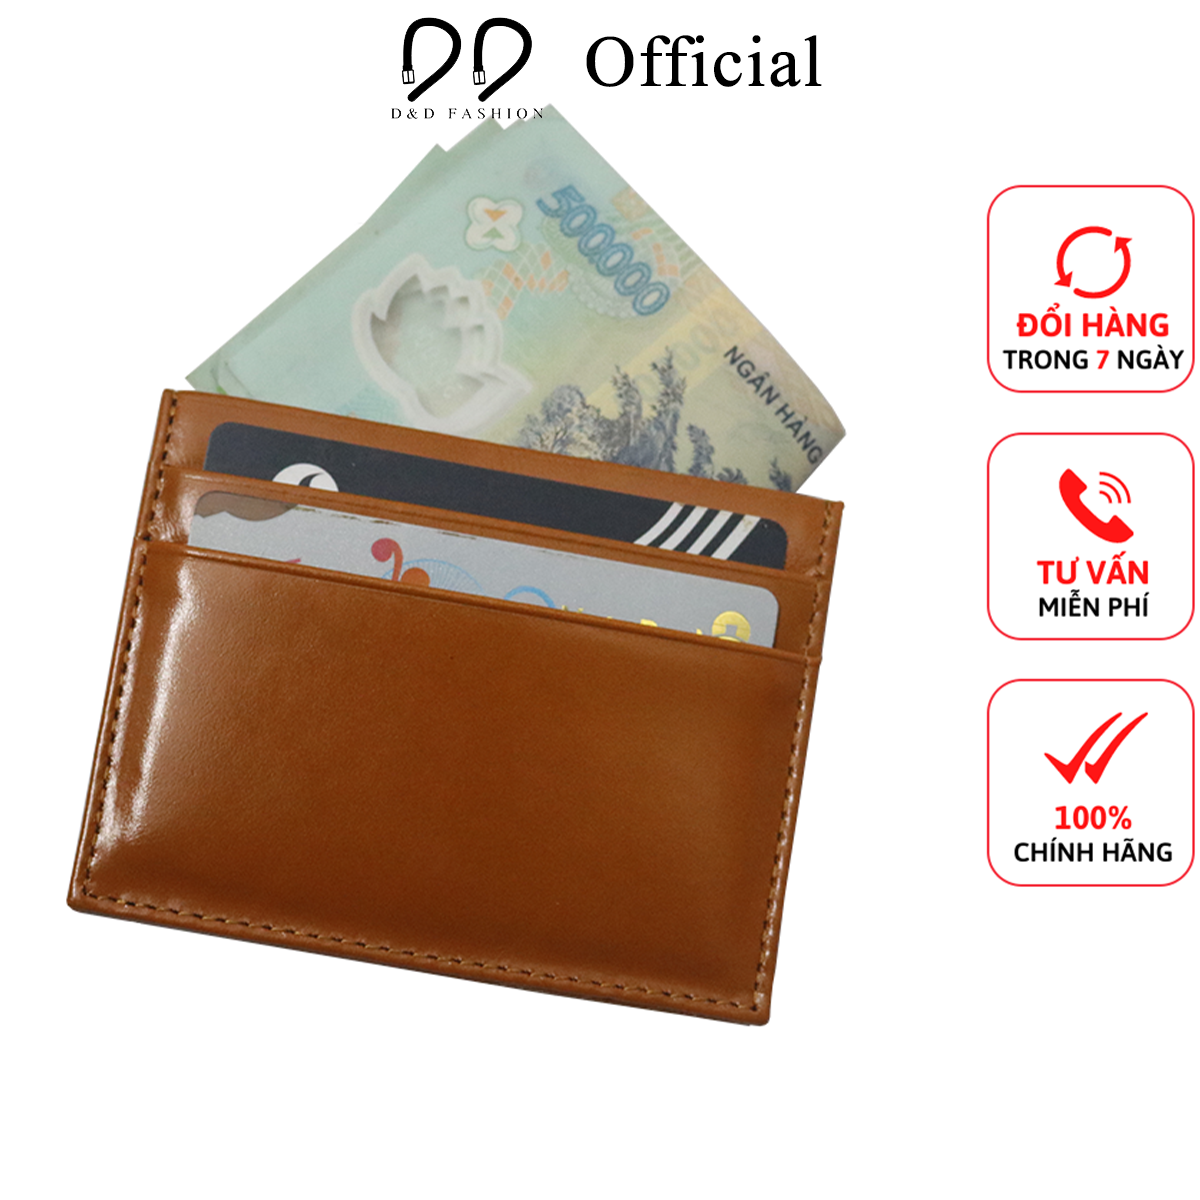 Hình ảnh Ví đựng thẻ card da bò D&D Fashion DDF088 nhỏ gọn, tiện lợi, bảo hành 12 tháng